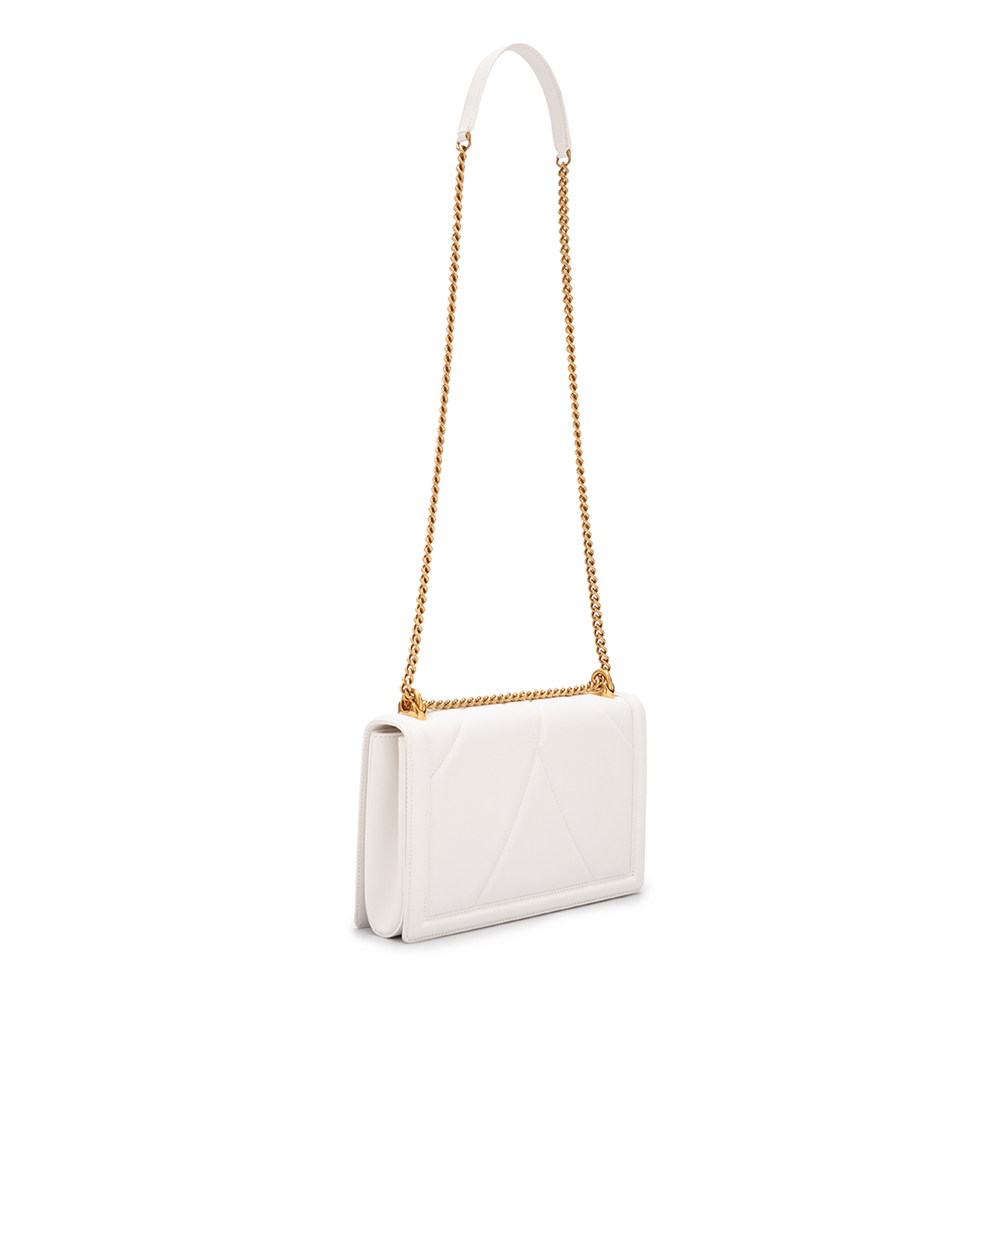 Кожаная сумка Devotion Large Dolce&Gabbana BB6651-AV967, белый цвет • Купить в интернет-магазине Kameron